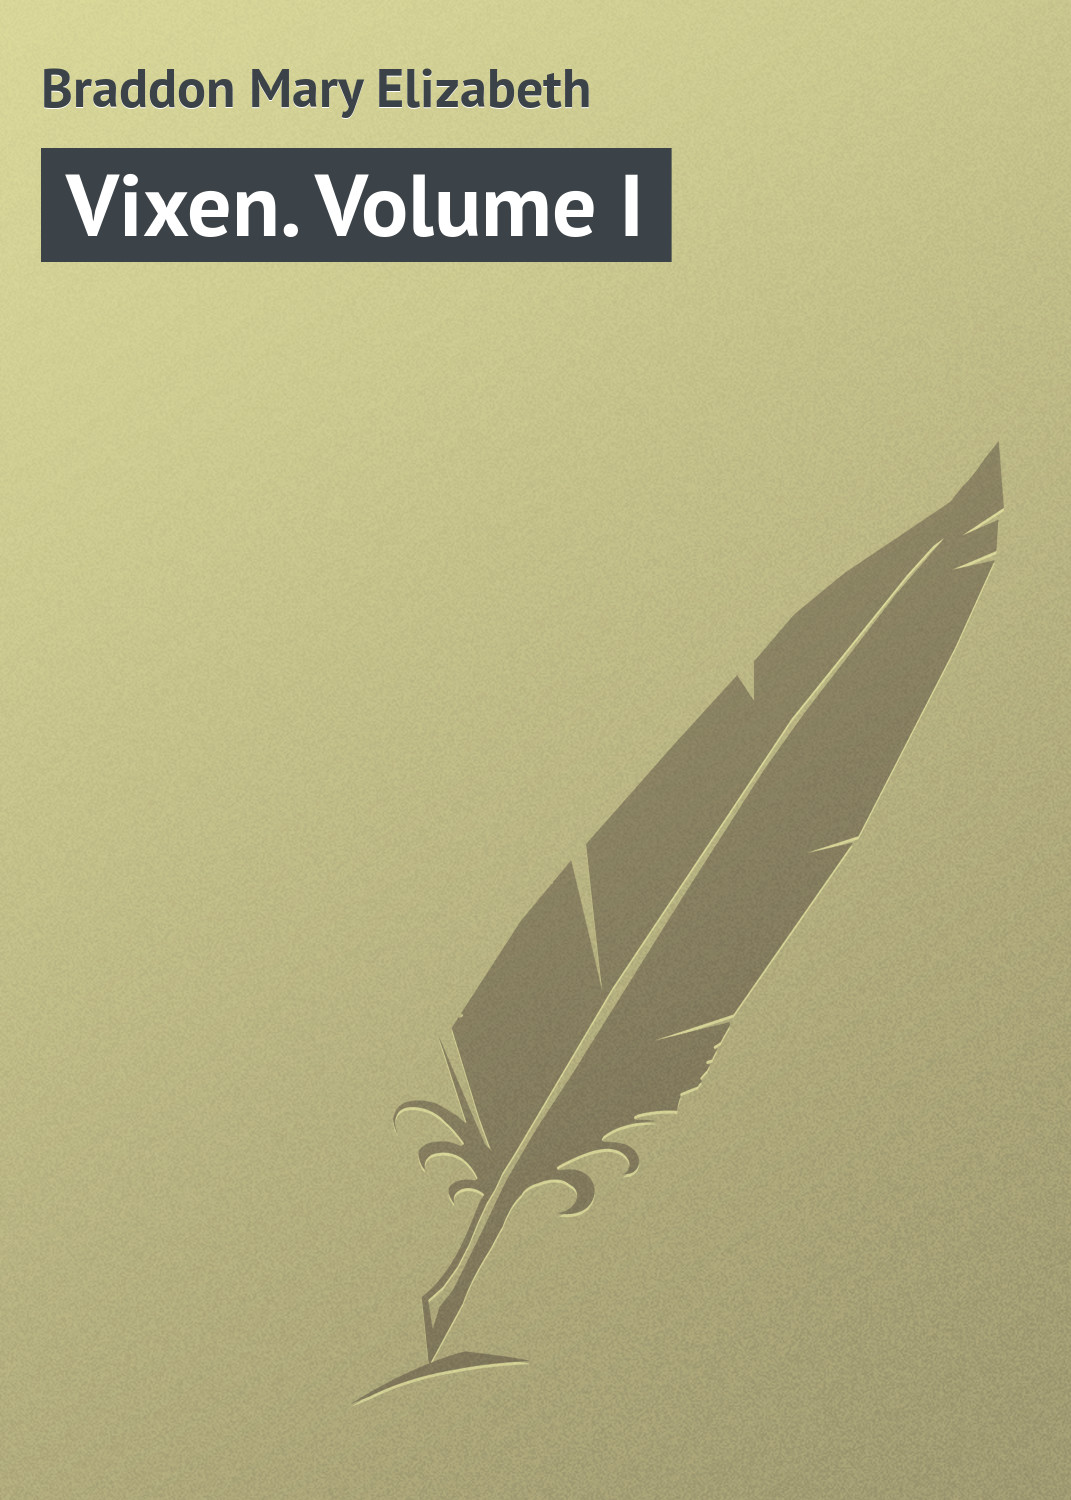 Книга Vixen. Volume I из серии , созданная Mary Braddon, может относится к жанру Зарубежная классика, Иностранные языки. Стоимость электронной книги Vixen. Volume I с идентификатором 23170867 составляет 5.99 руб.